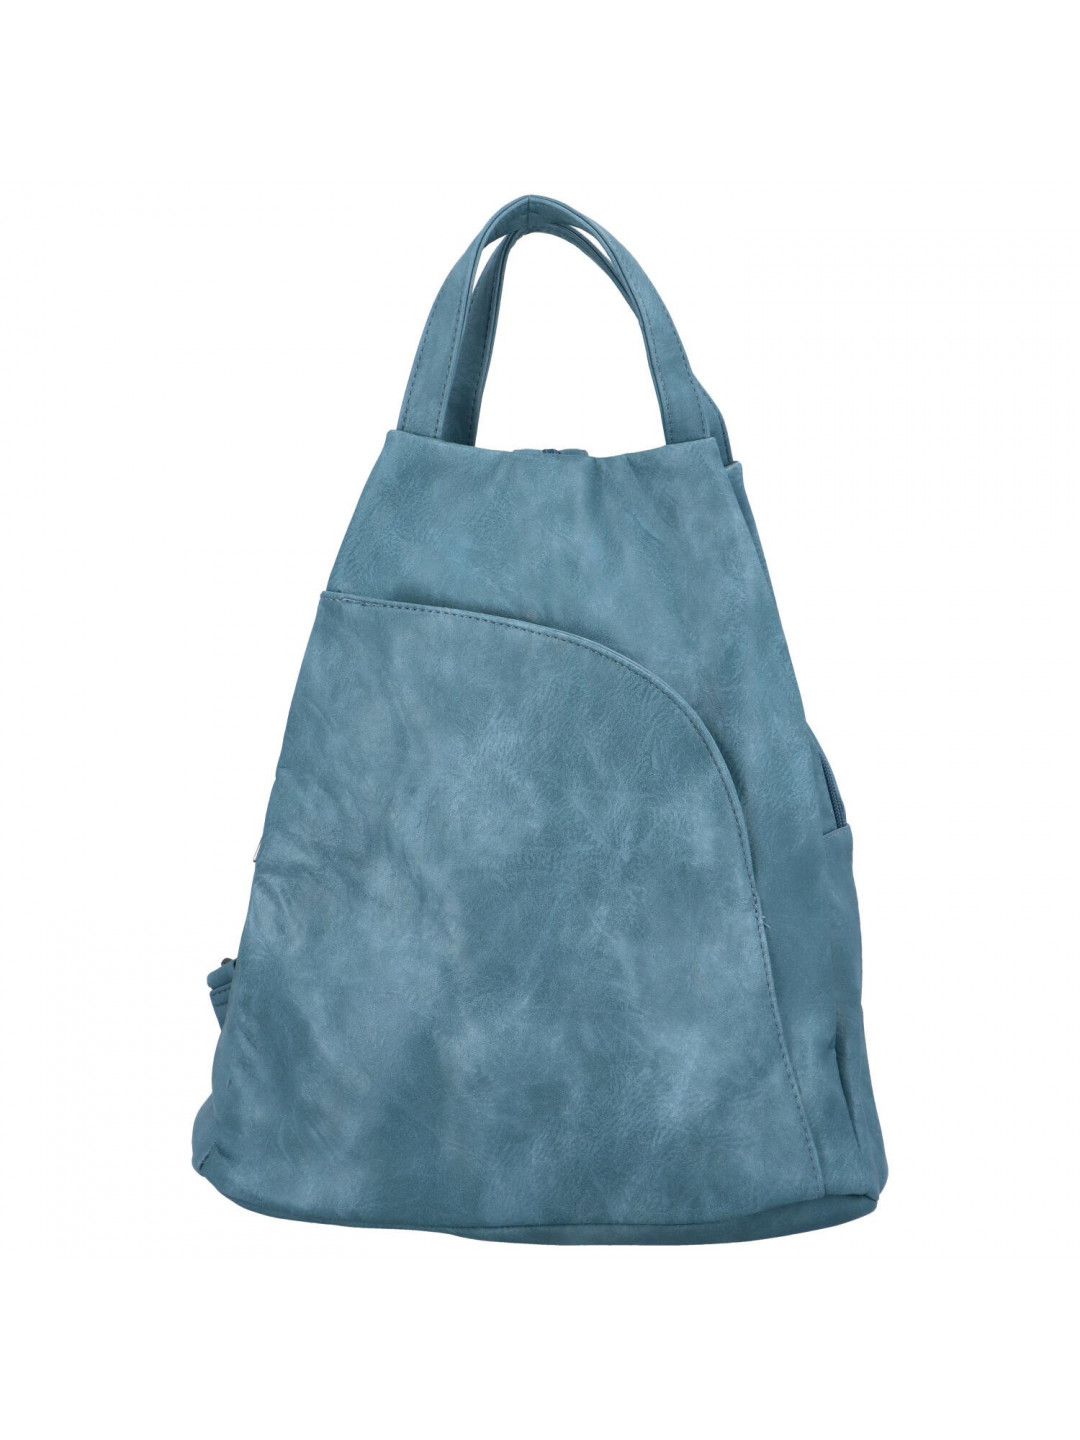 Volnočasový stylový dámský koženkový batoh Angela světle modrá